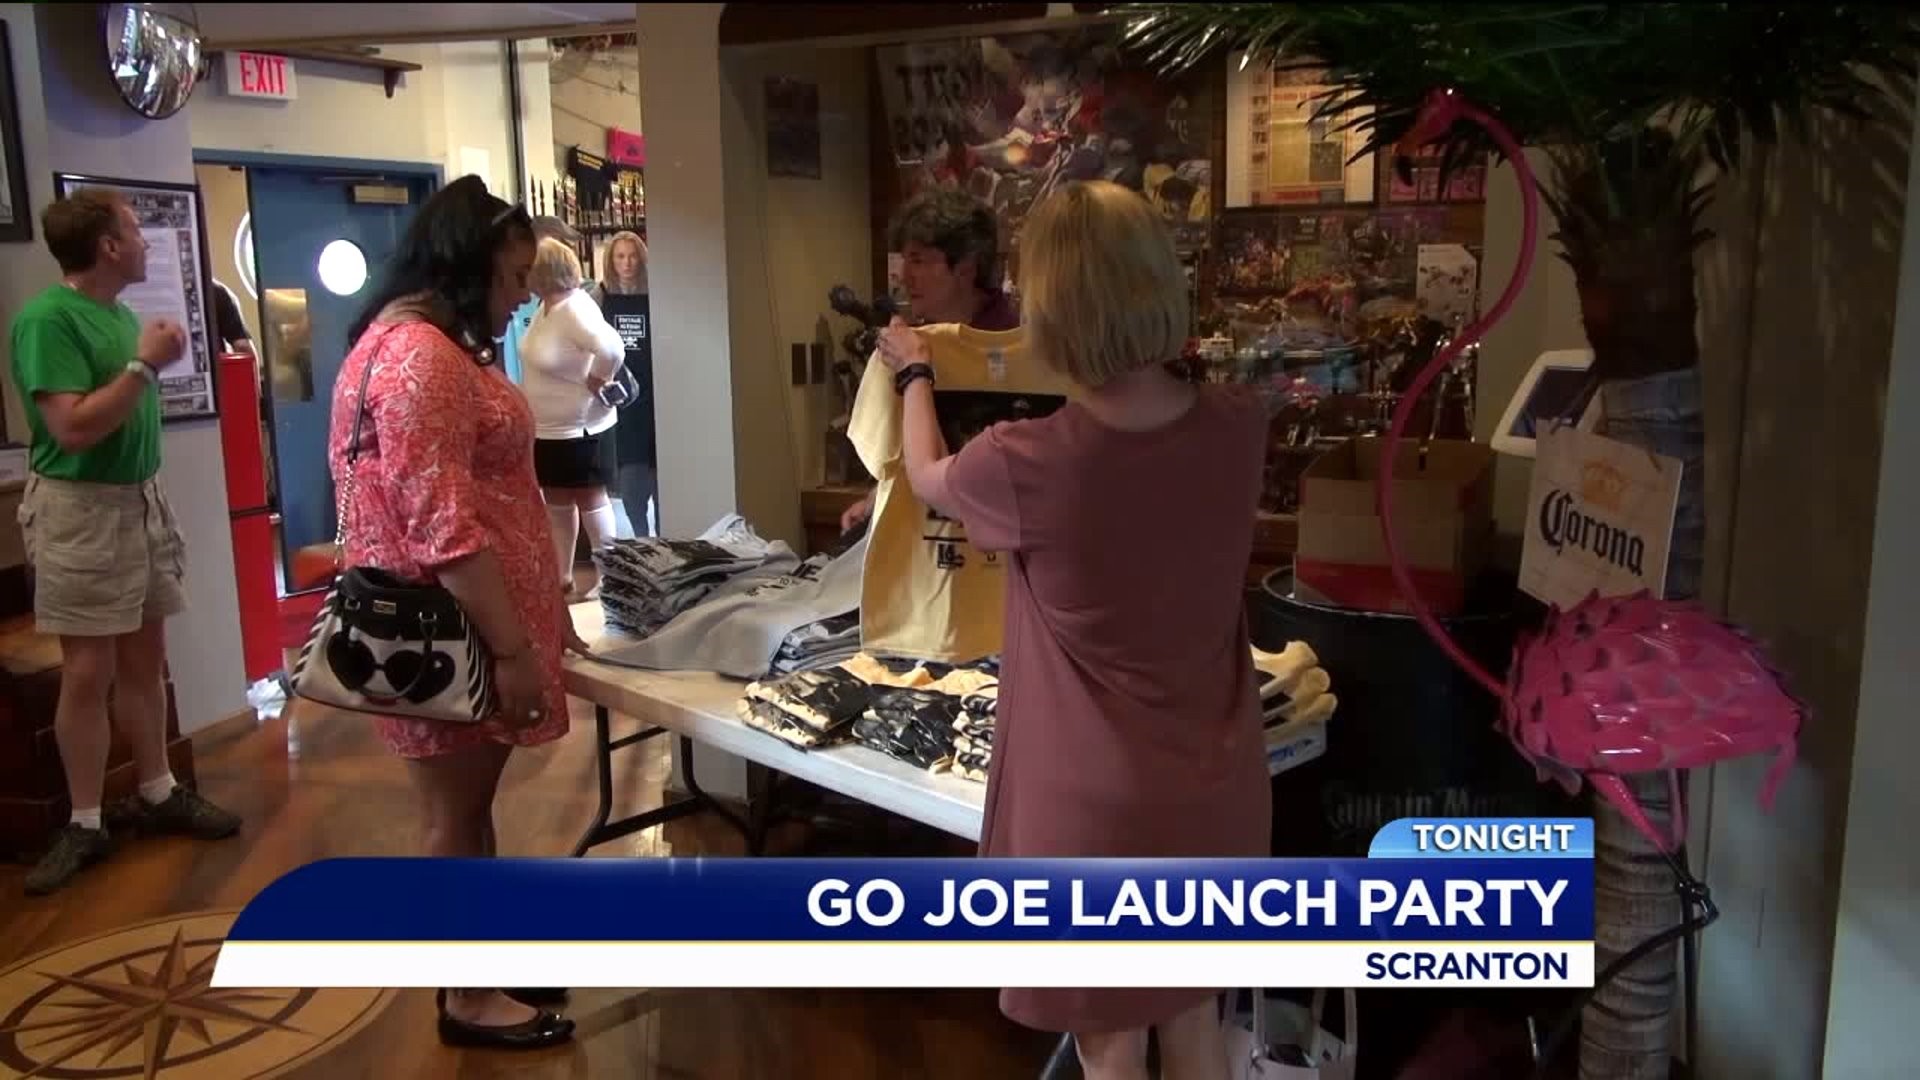 Launch Party for Go Joe 22 held in Scranton